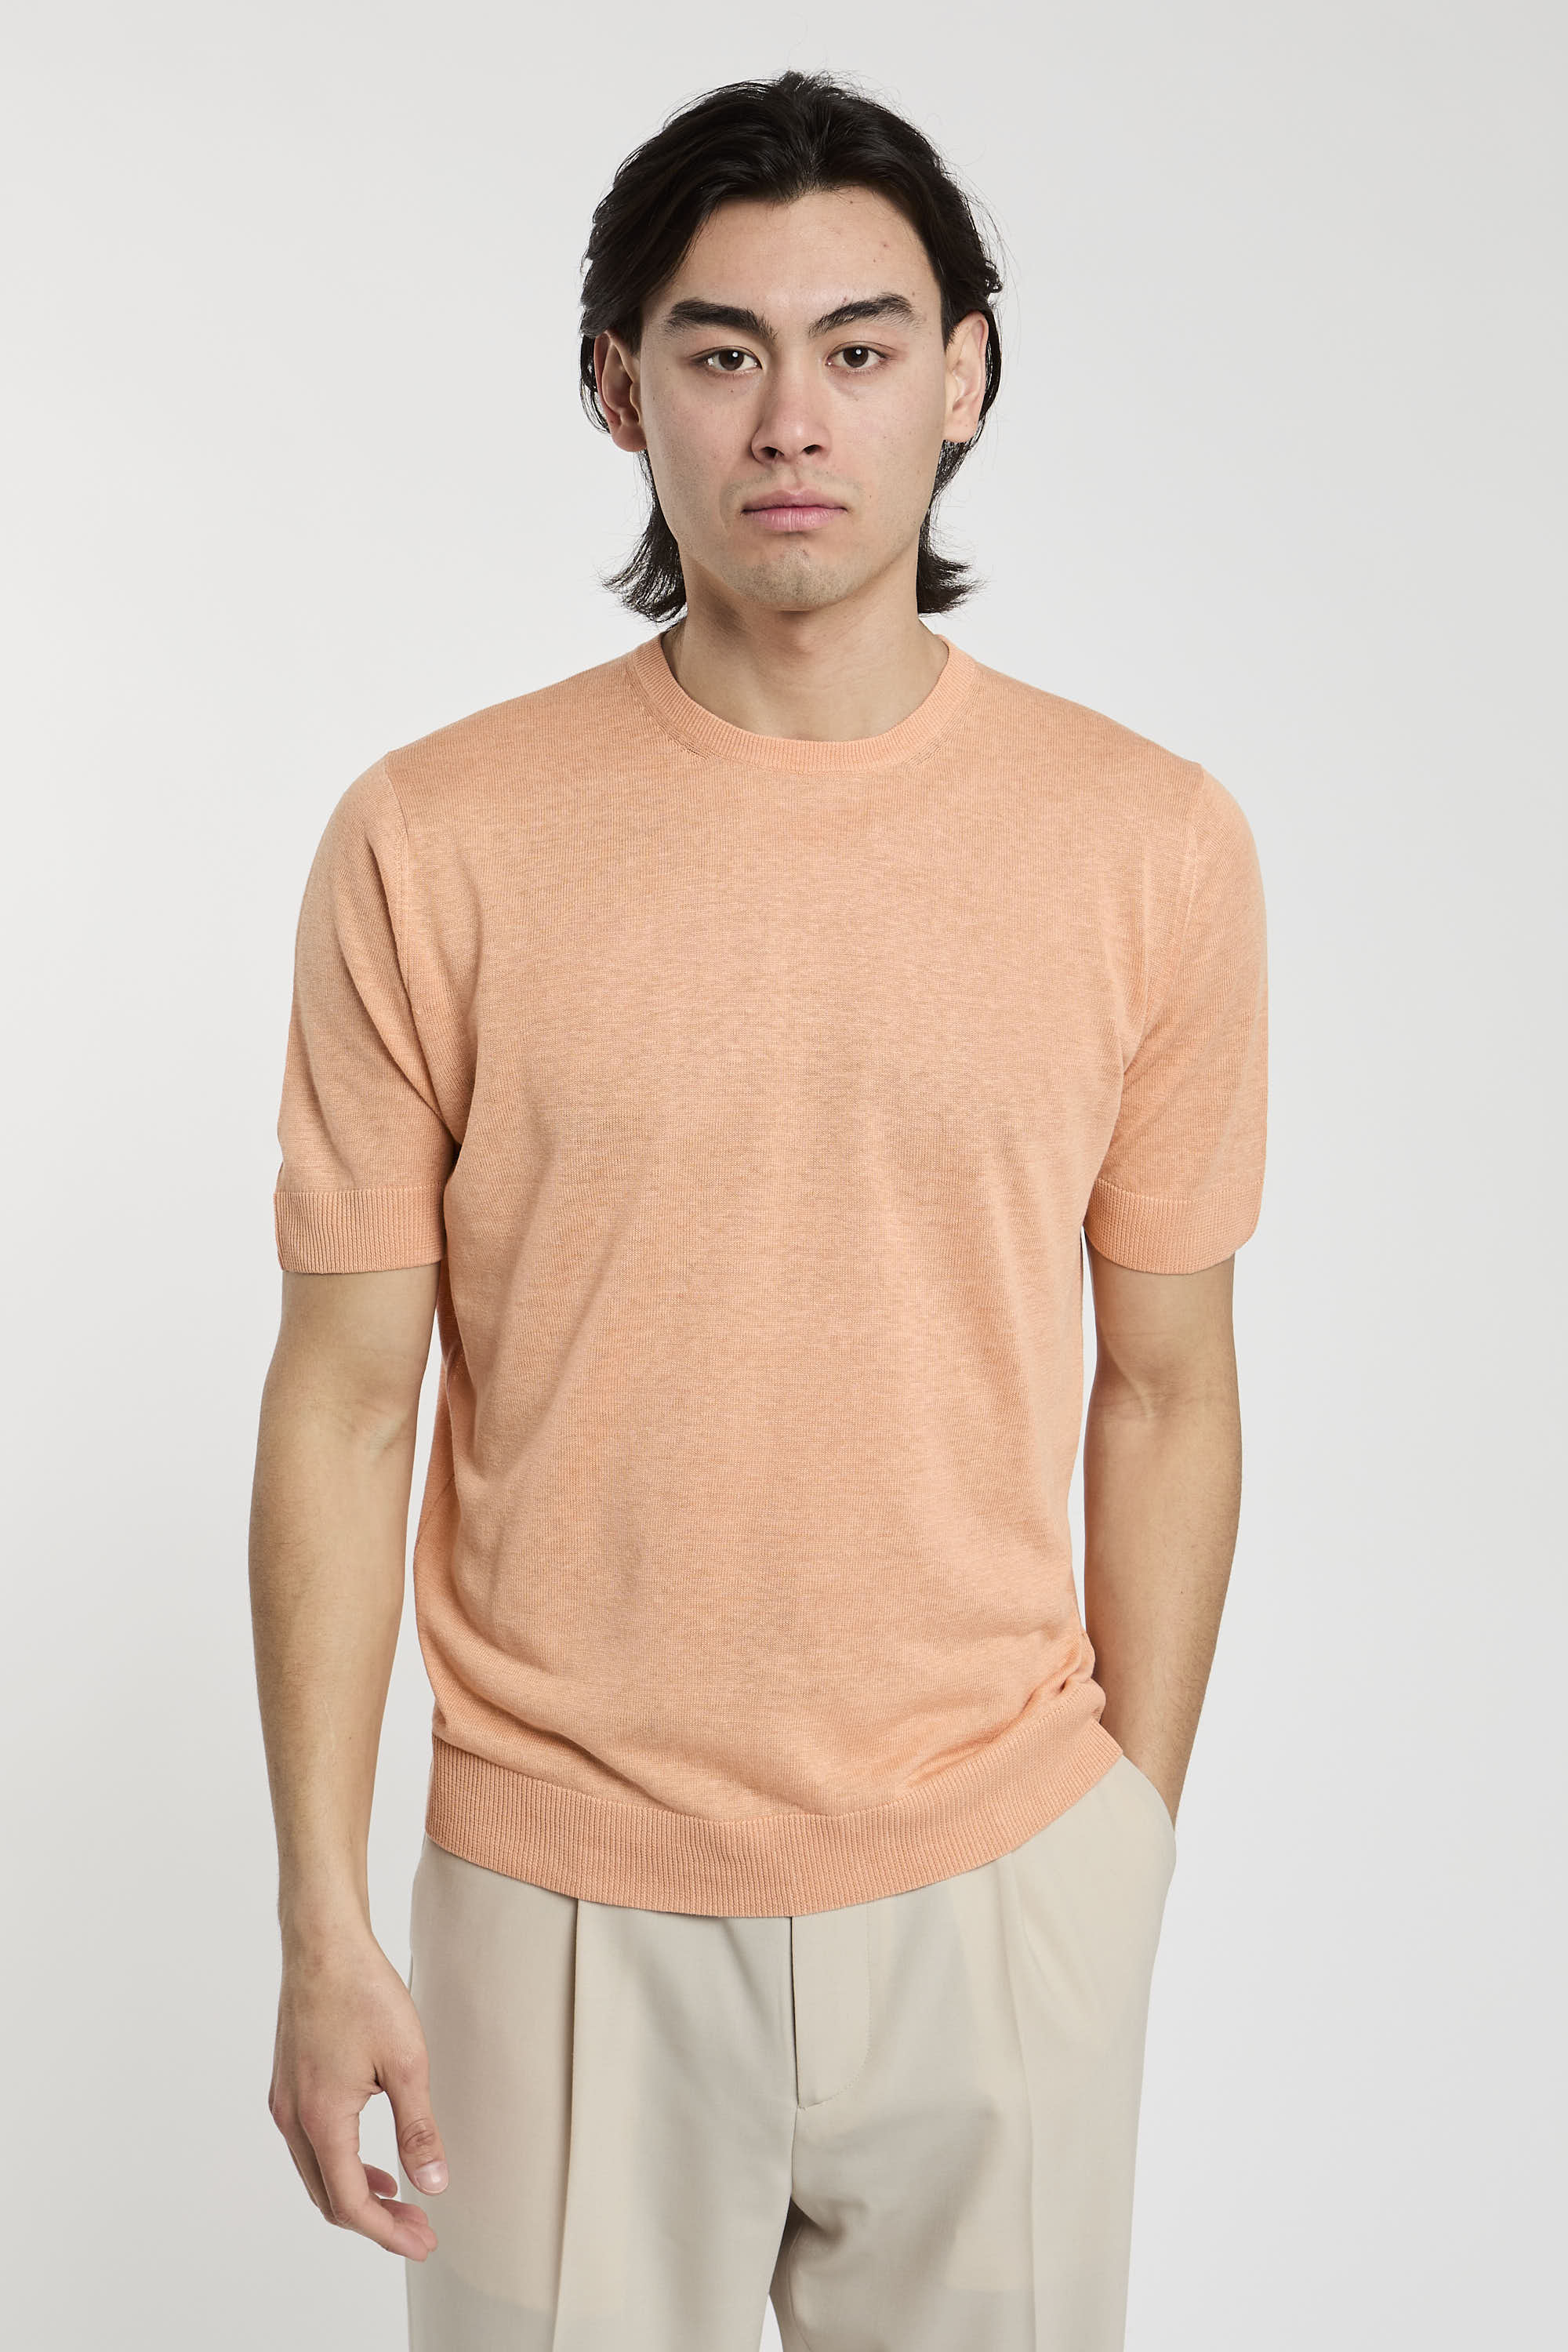 Filippo De Laurentiis Silk/Linen Pink T-Shirt-1